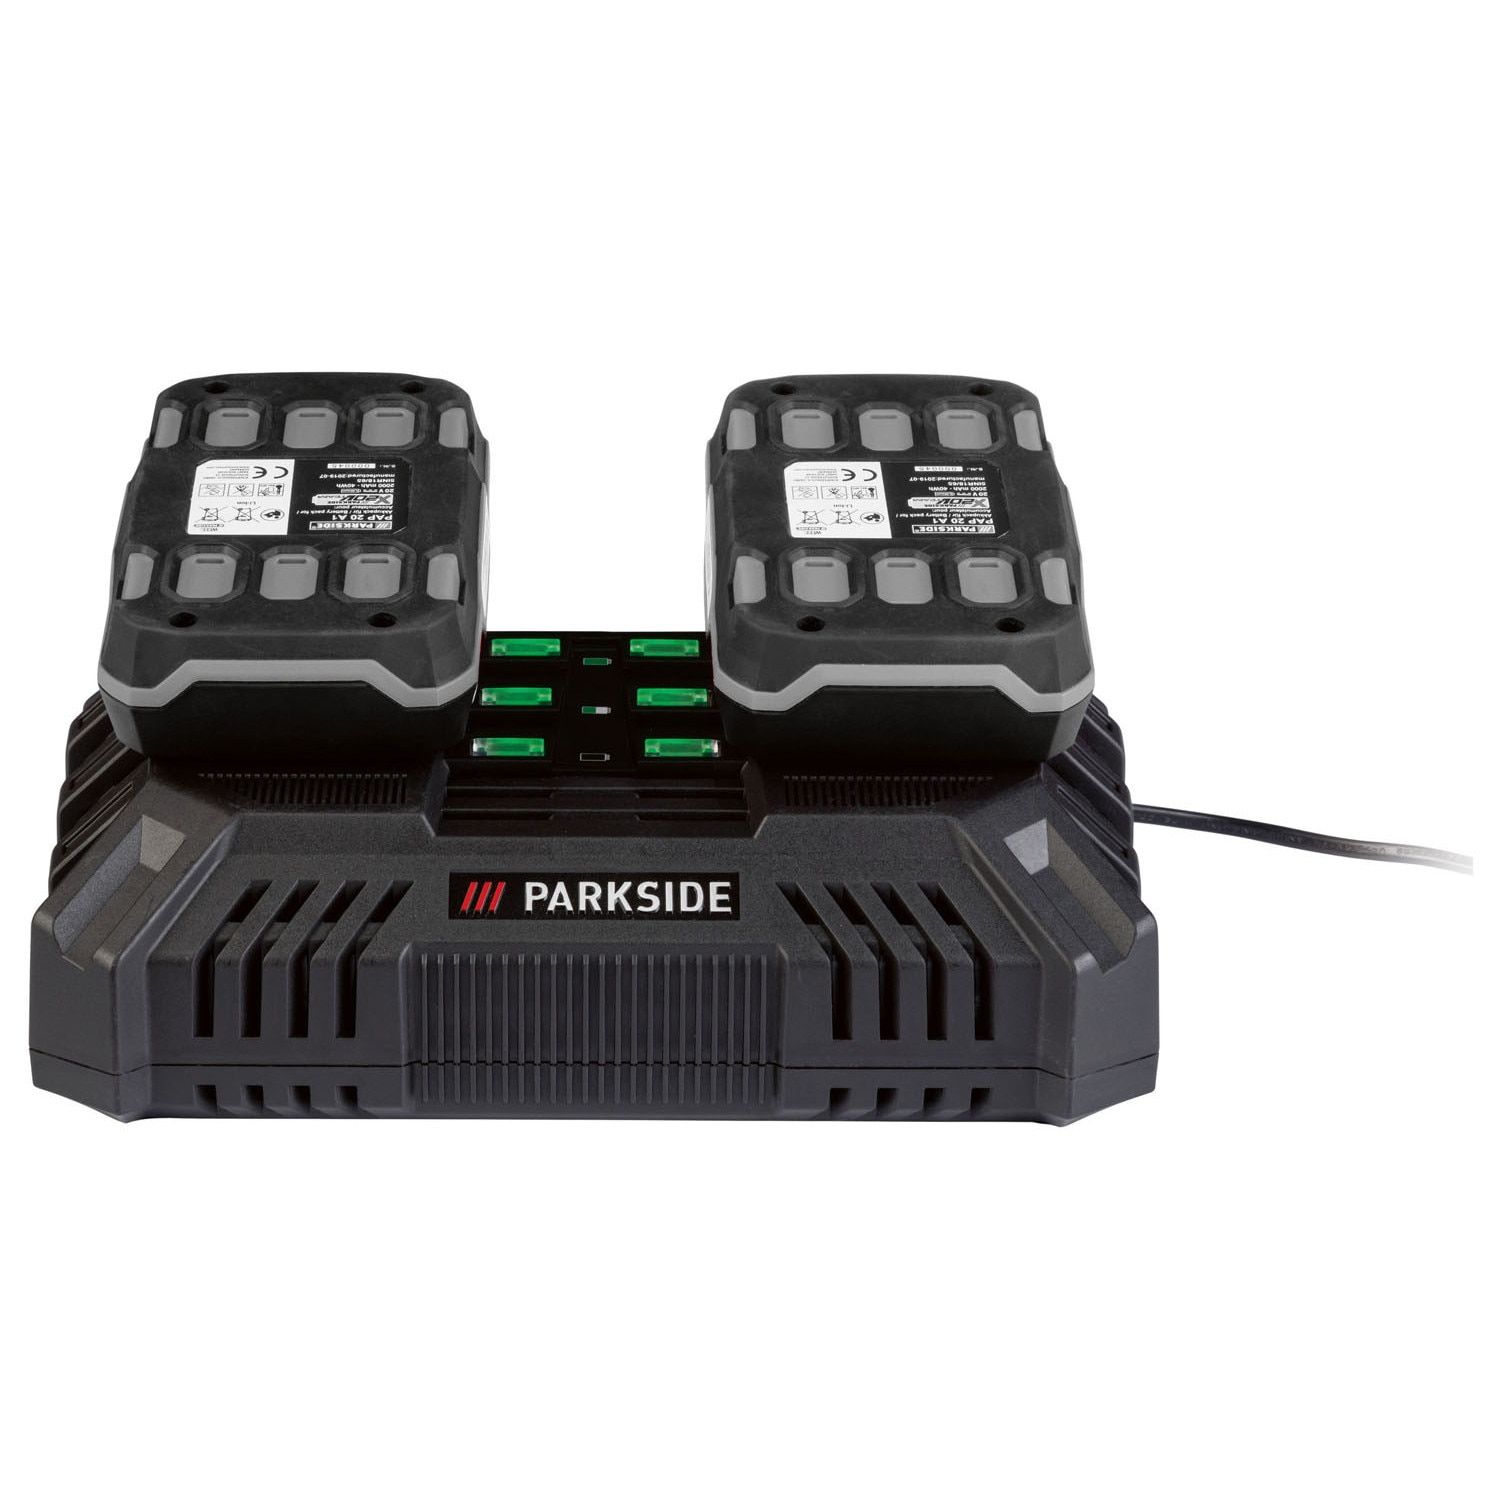 ParkSide PDSLG 20 A1 X20V 4.5A perces akkutöltő dupla gyorstöltő, Team 20V kettős 200W akkukhoz akkumulátor töltő, 35